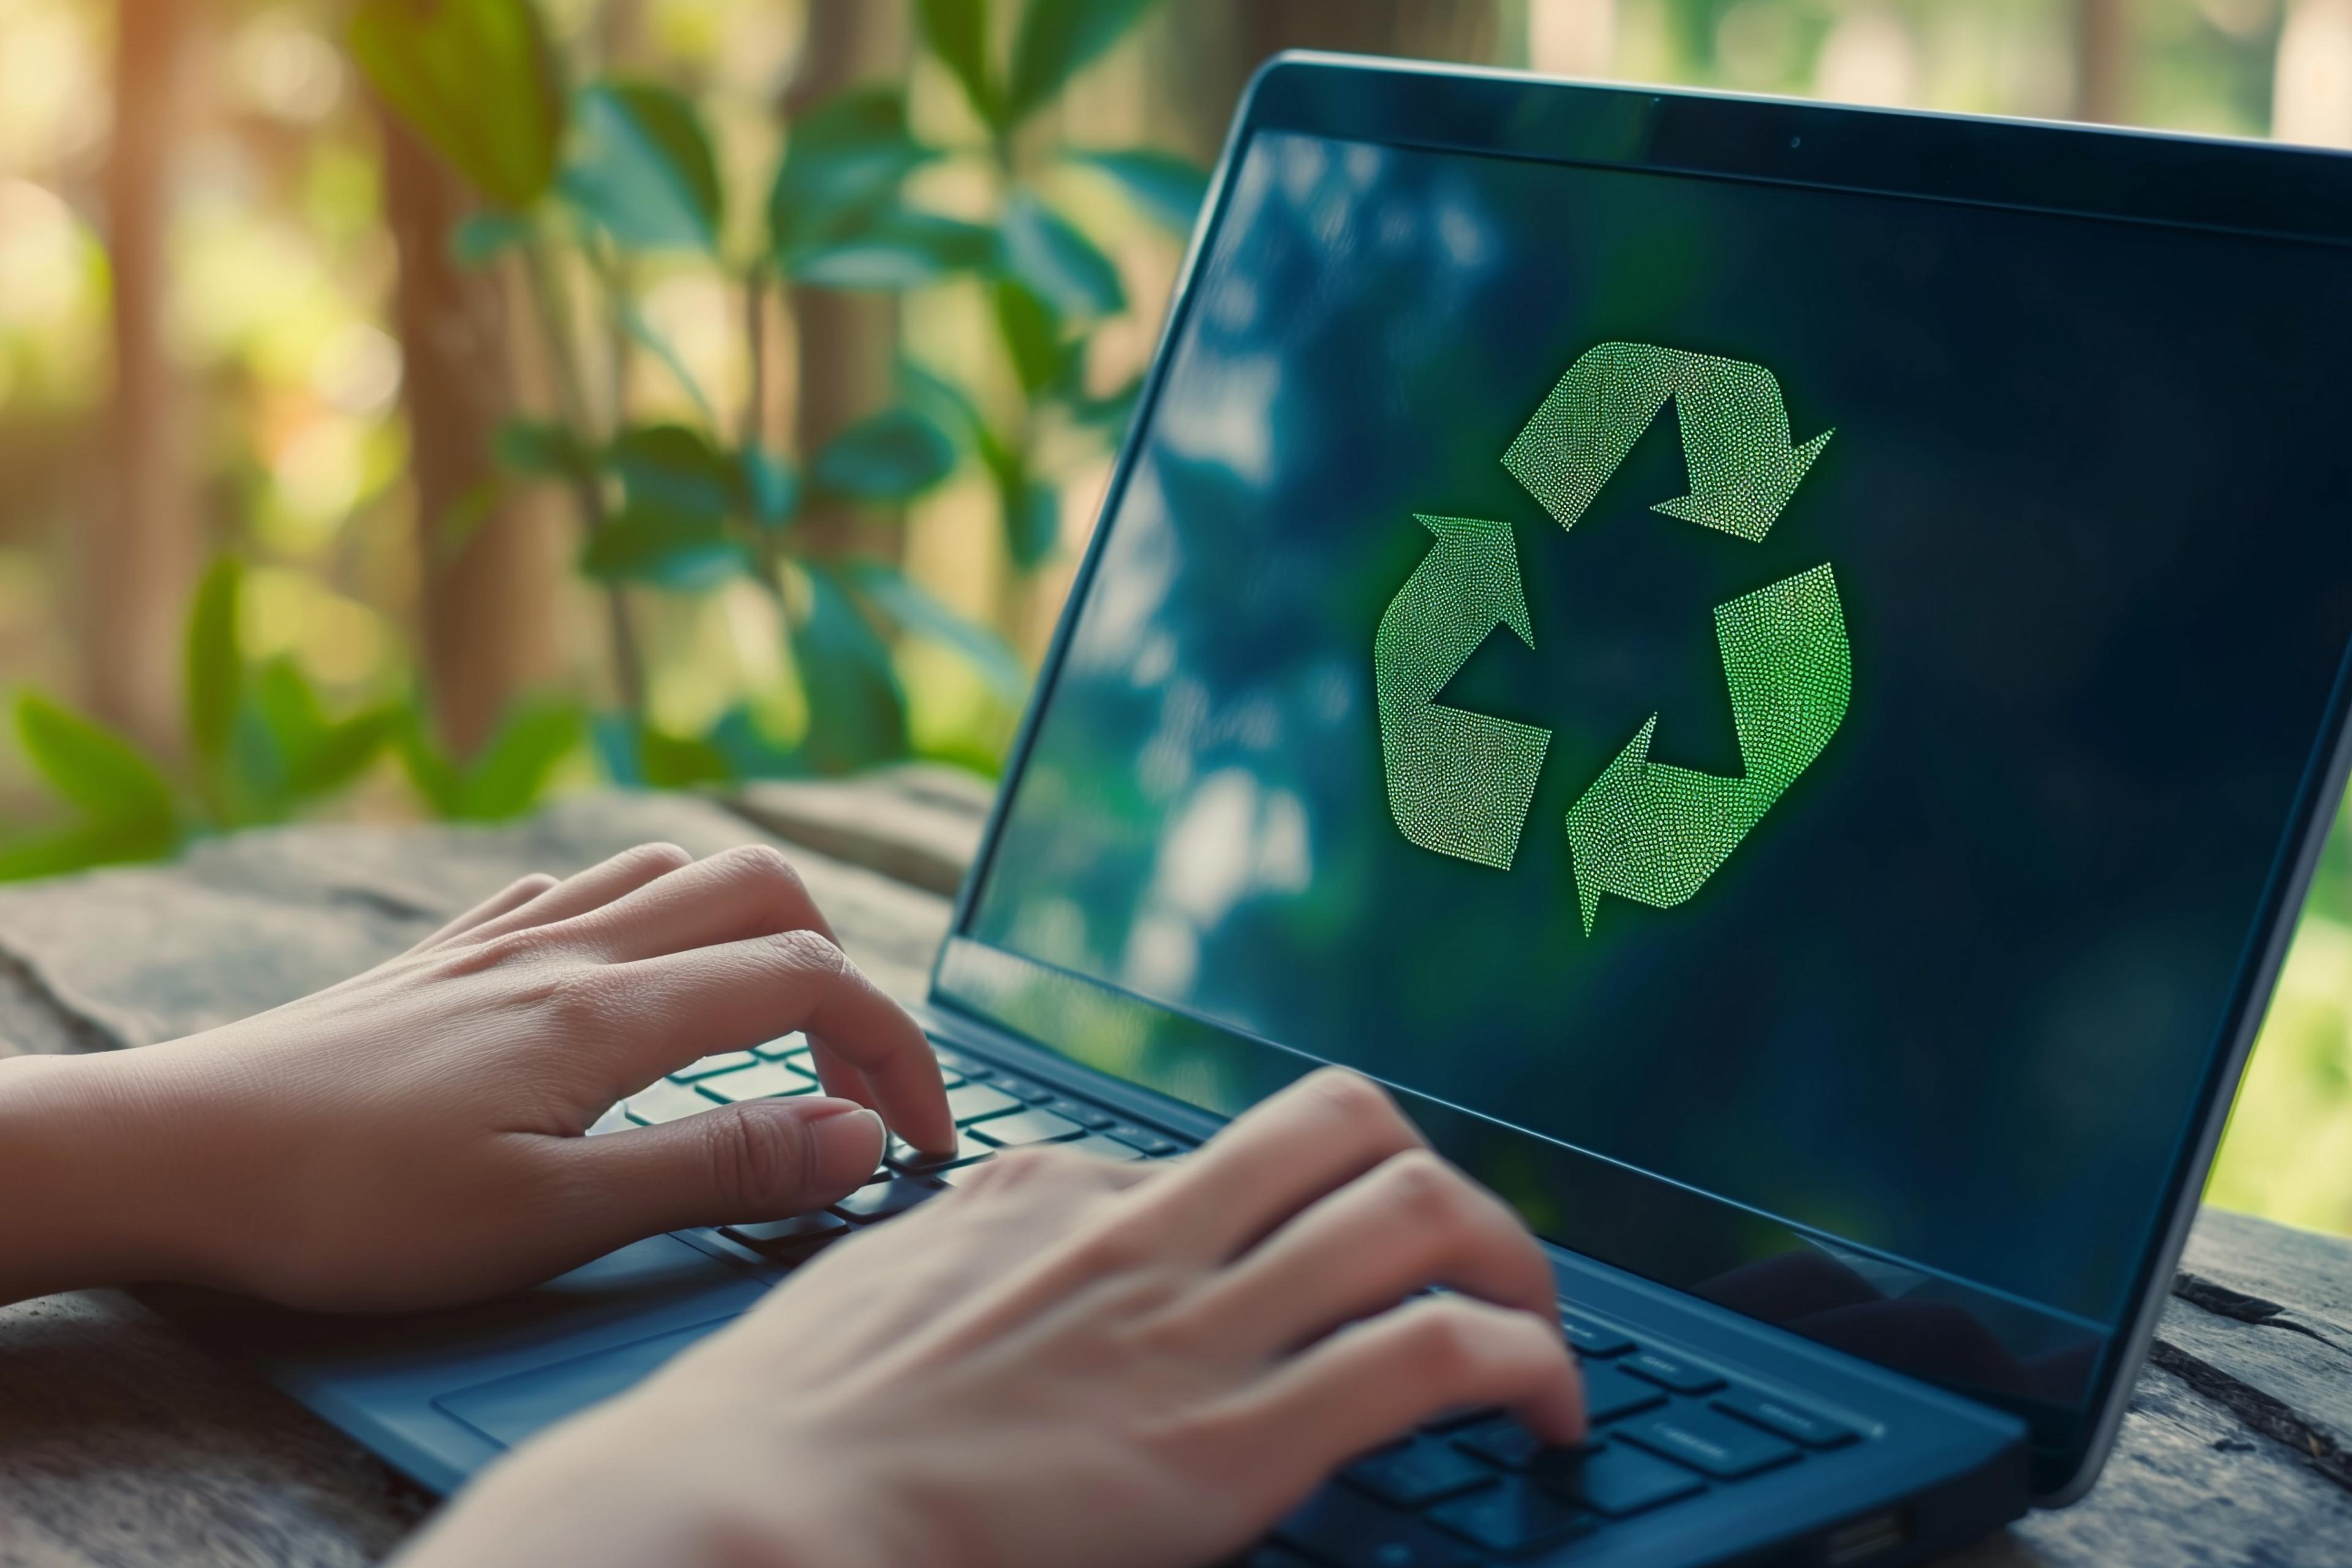 Aufgeklappter Laptop mit Recycling-Pfeile-Symbol in grün, zwei tippende Hände, im Hintergrund Pflanzen